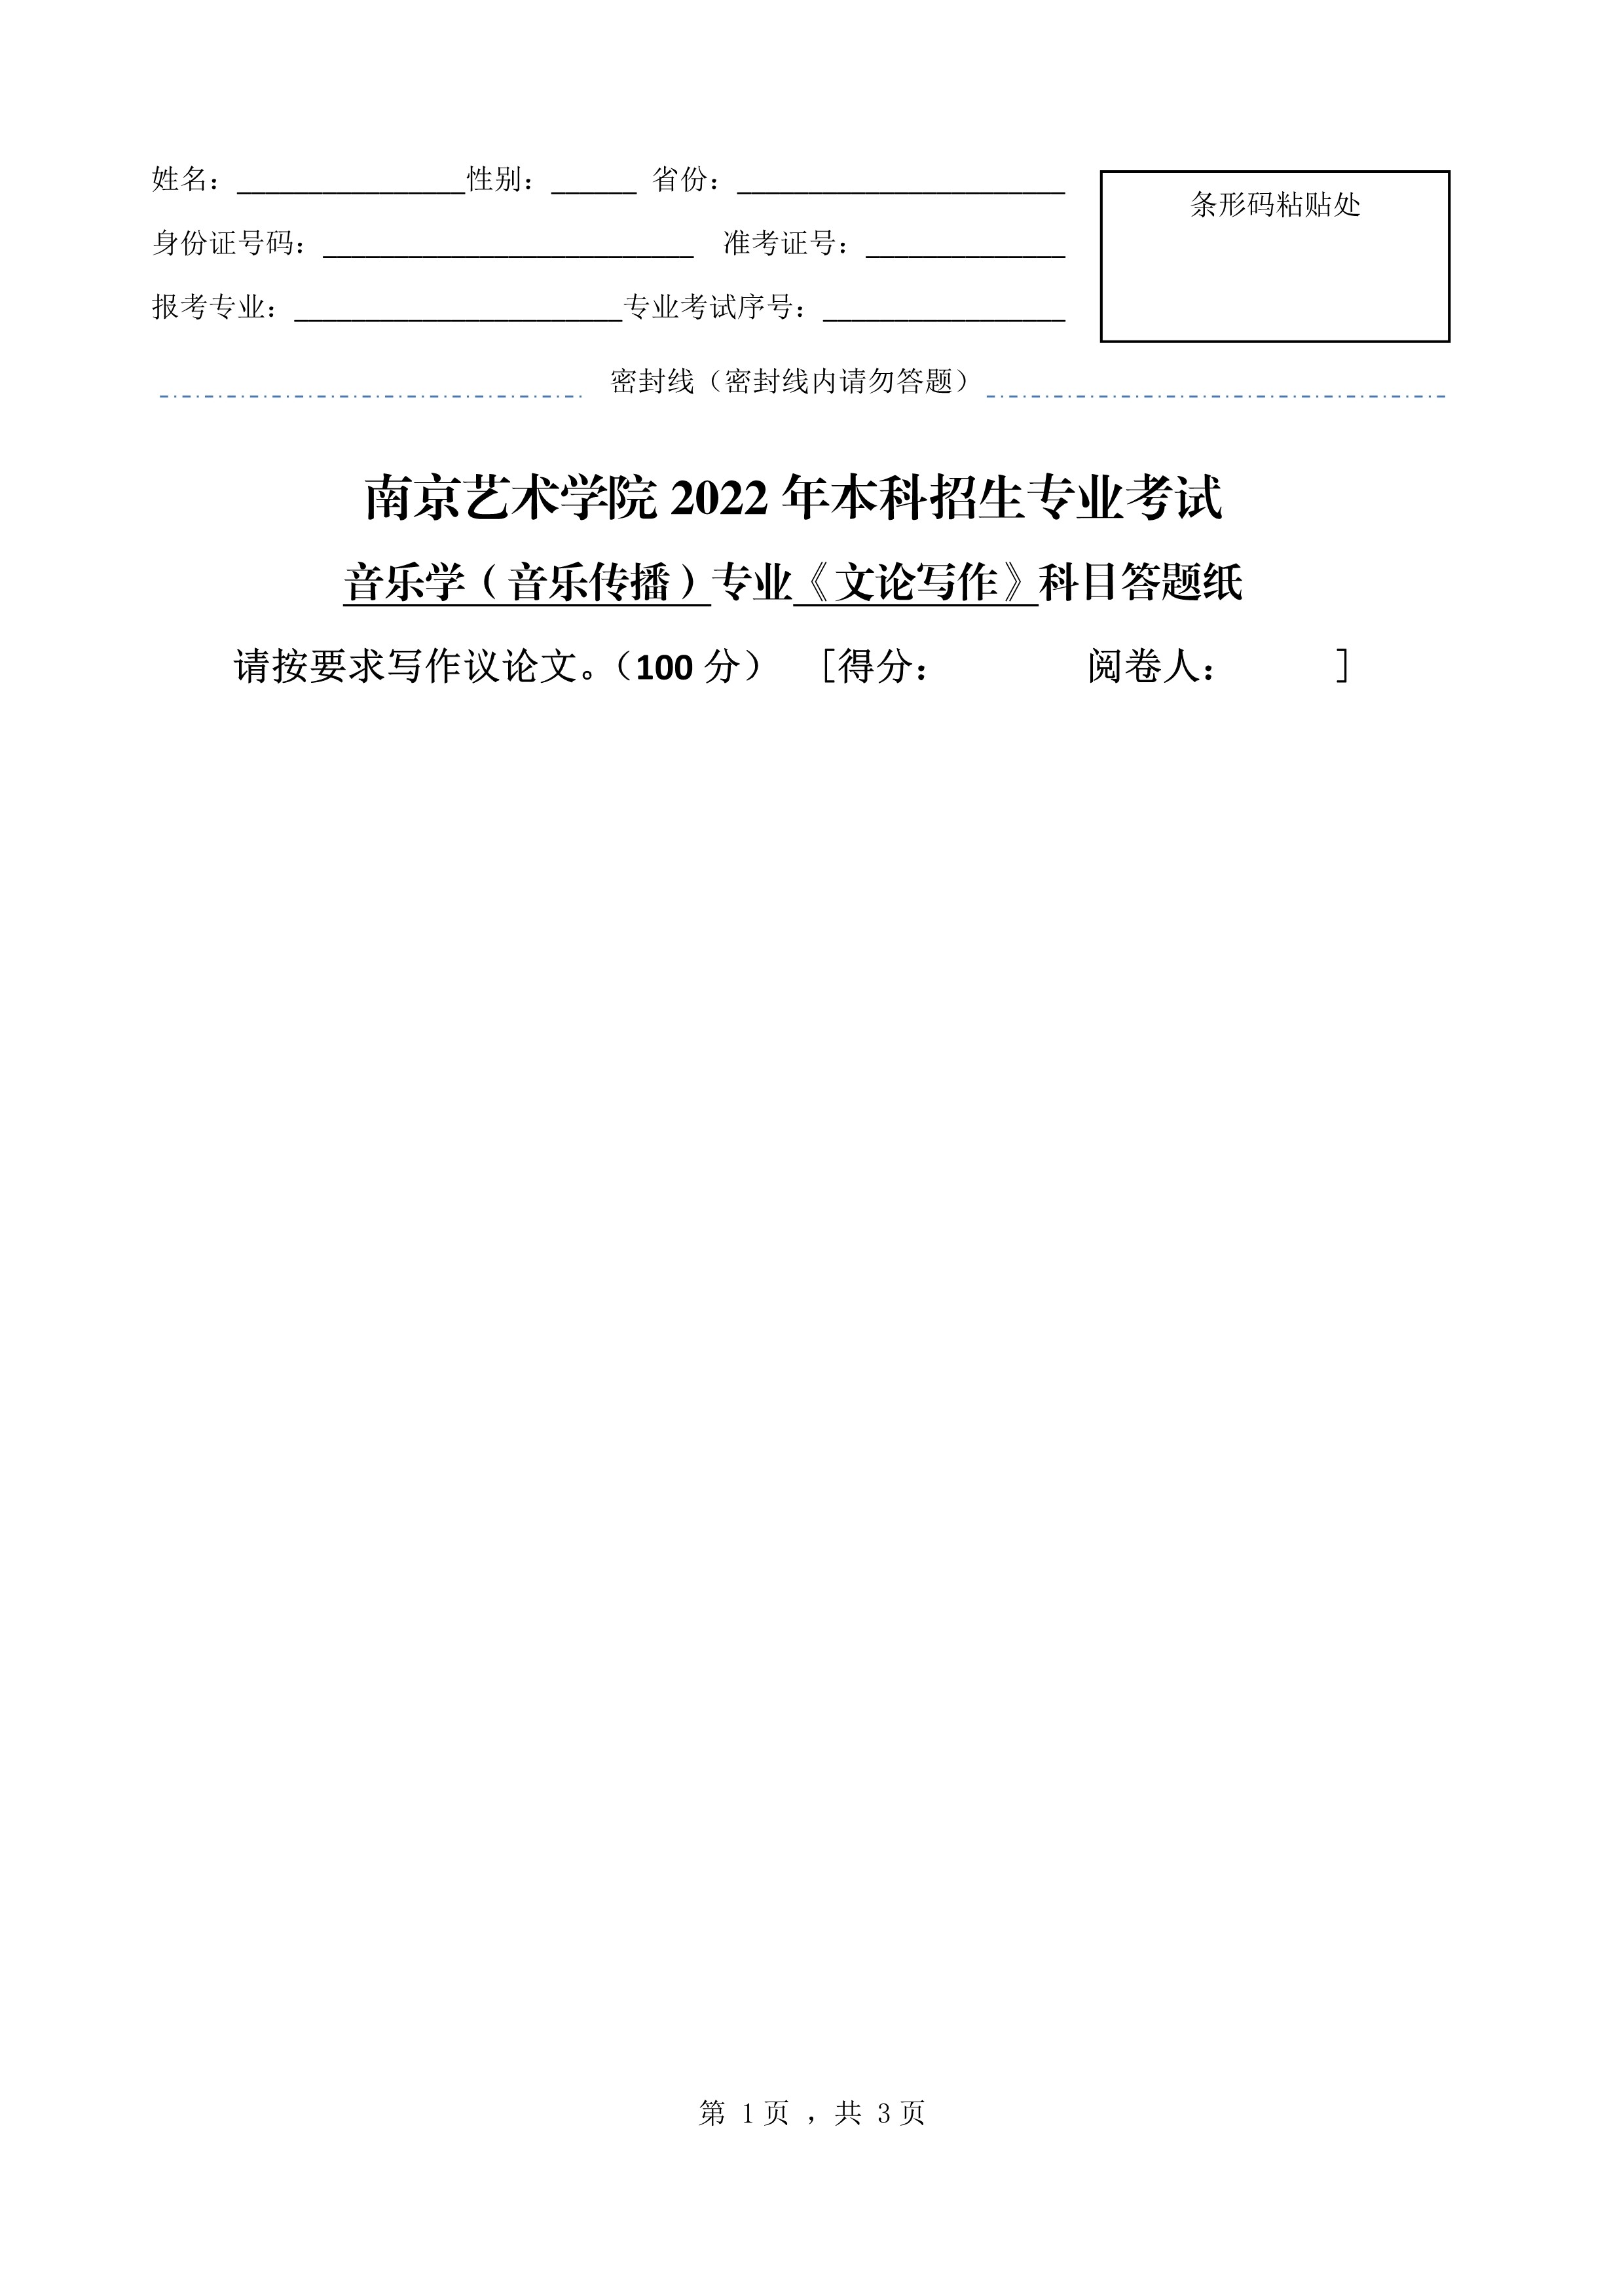 南京艺术学院2022年本科招生音乐学（音乐传播）专业《文论写作》科目考试答题纸 - 副本_1.jpg